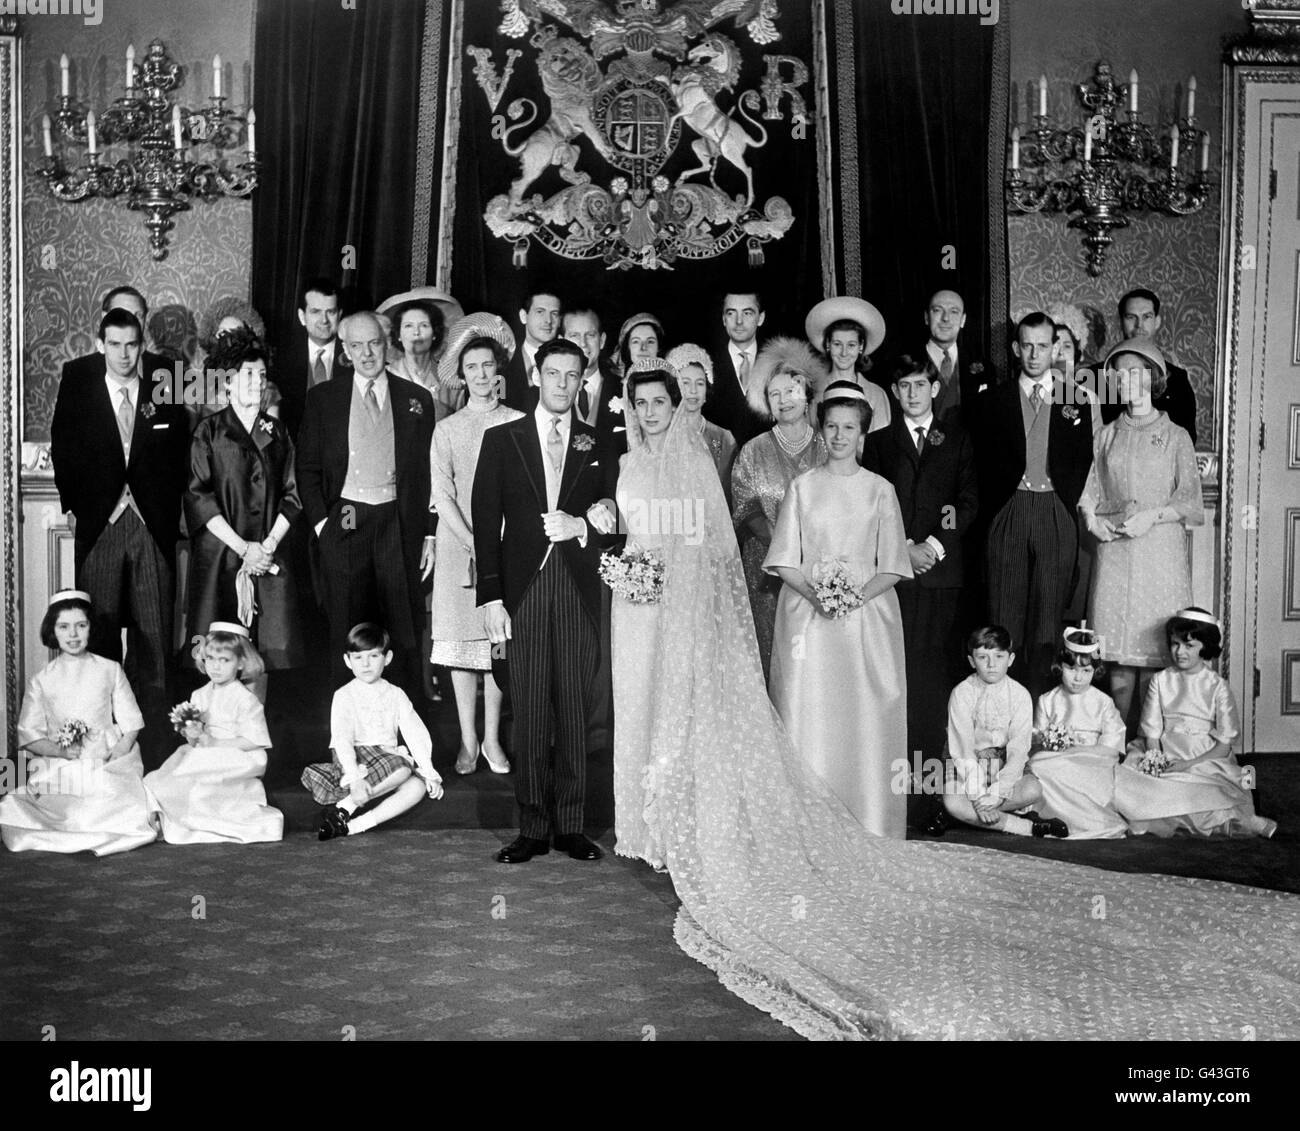 Il gruppo di nozze al St James's Palace, Londra, durante il ricevimento dopo il matrimonio della Principessa Alexandra e Angus Ogilvy. Da sinistra a destra, fila posteriore; Peregrine Fairfax, Lady Balfour, Iain Tennant, Lady Lloyd, James Ogilvy, Lady Ogilvy, Lord Ogilvy, Lord Lloyd, Lady Margaret Tennant e Peter Balfour. Centro, da sinistra; il Principe Michele di Kent, la Contessa di Airlie e il Conte di Airlie (genitori dello sposo), la Principessa Marina, la Duchessa di Kent (madre della sposa), il Duca di Edimburgo, la Regina, la Regina Madre, il Principe di Galles, il Duca e la Duchessa di Kent. Foto Stock